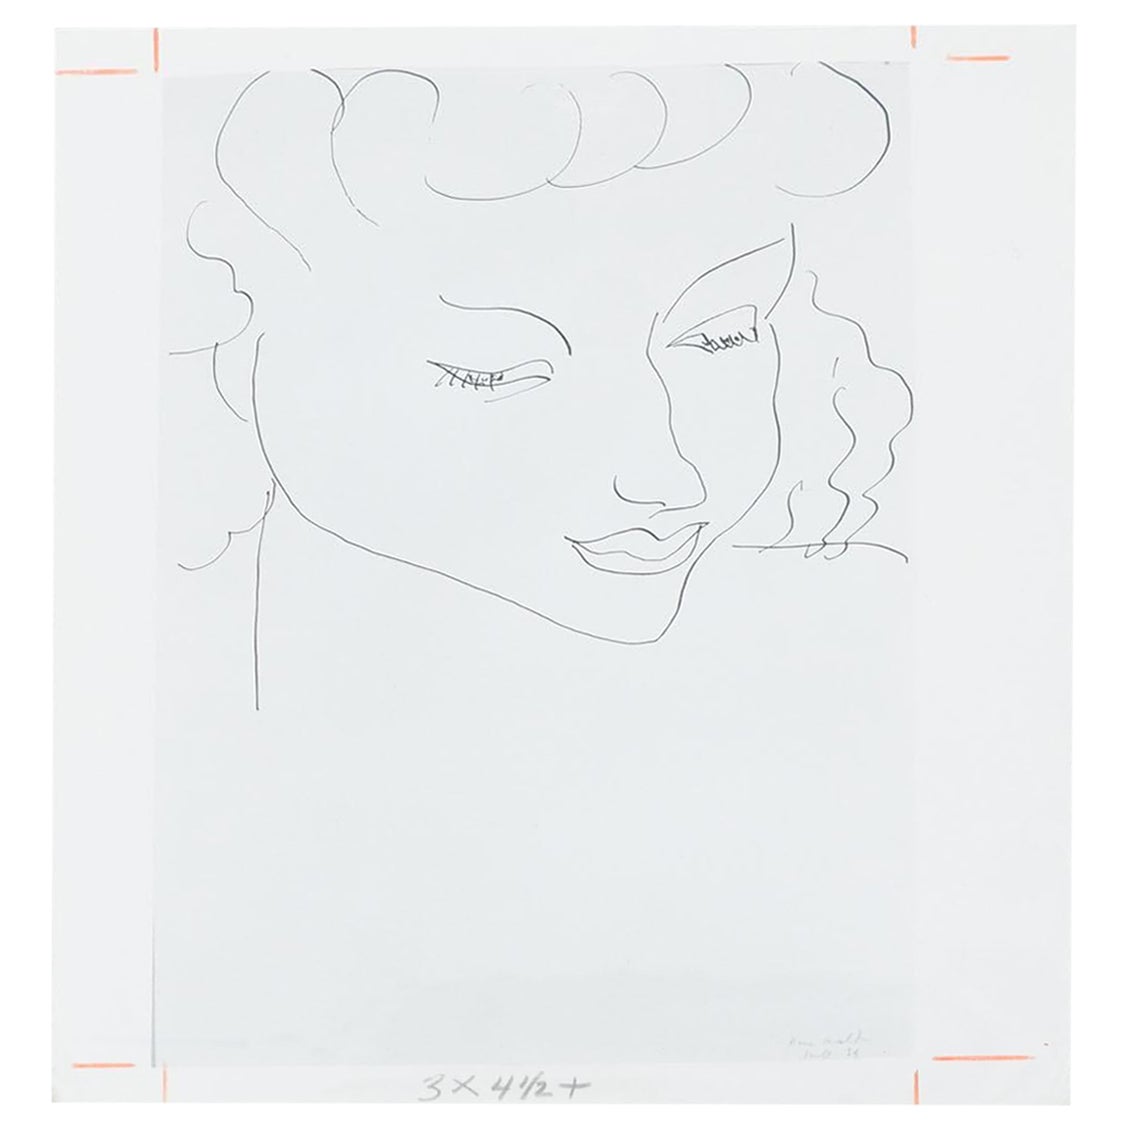 Archivfotografie von Henry Matisse, Gemälde „Mademoiselle Roudenko“, 1963 